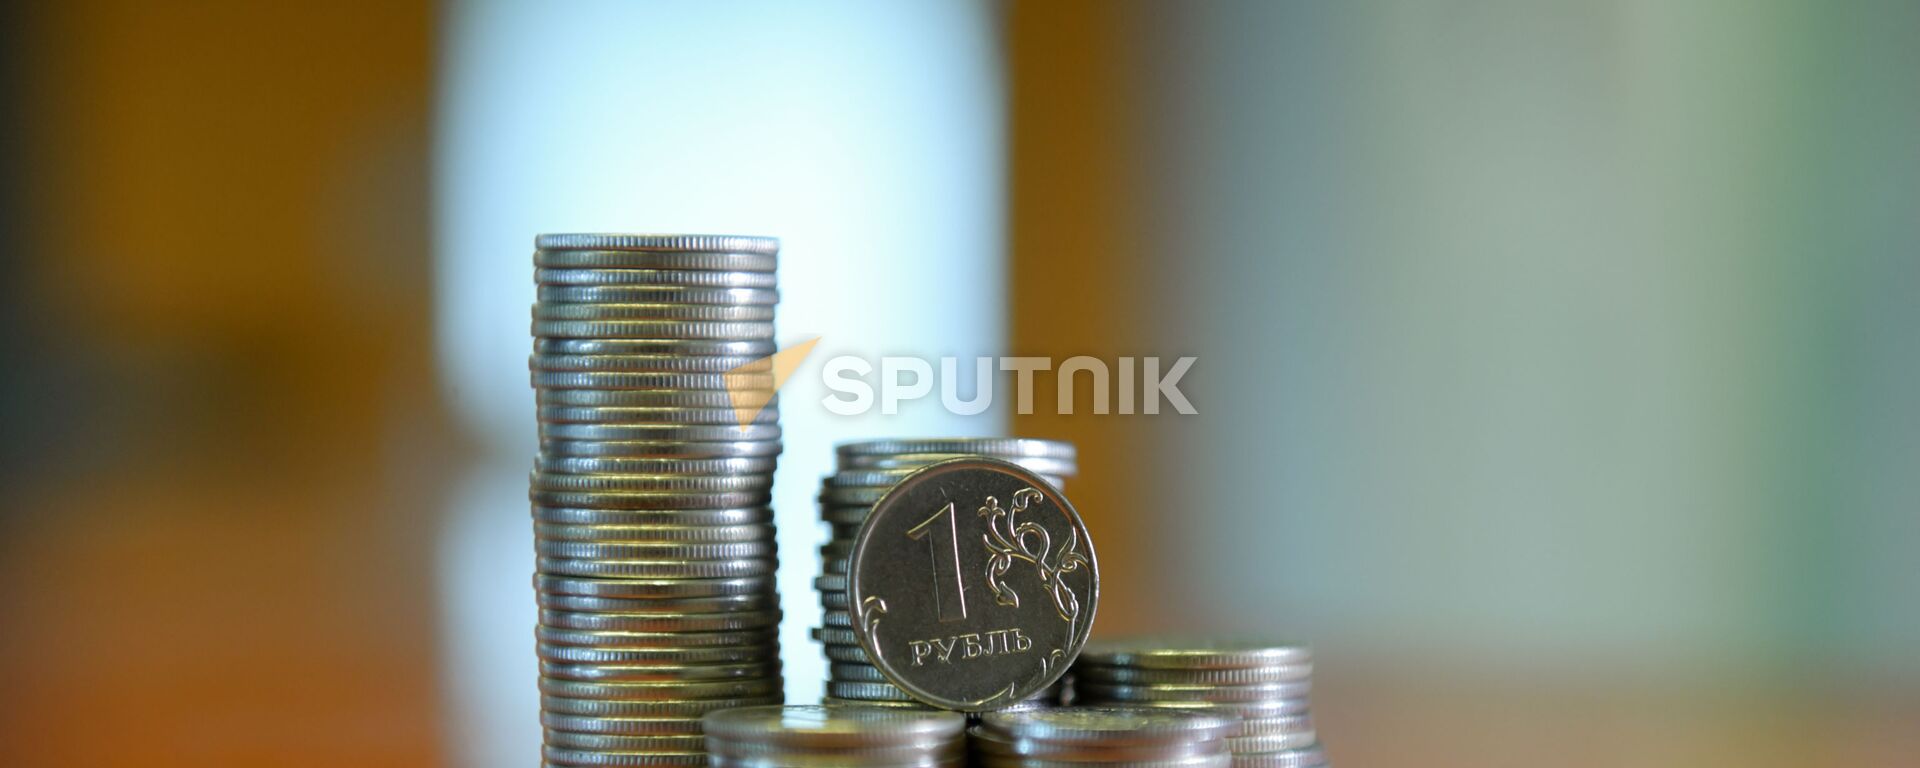 Монета номиналом один рубль  - Sputnik Аҧсны, 1920, 04.08.2021